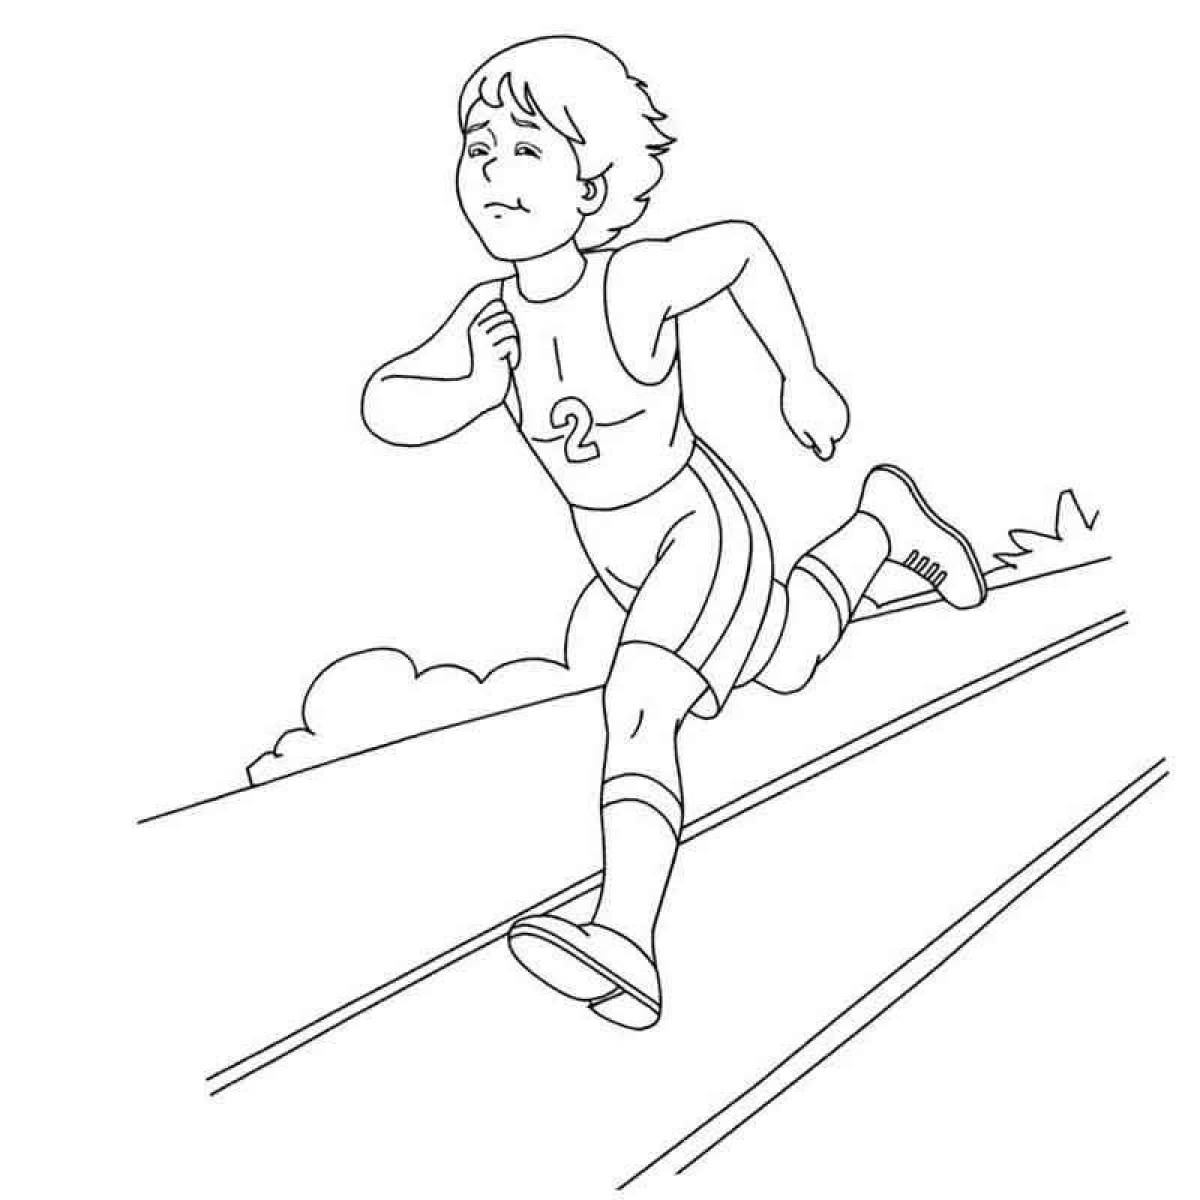 Детский рисунок бегун